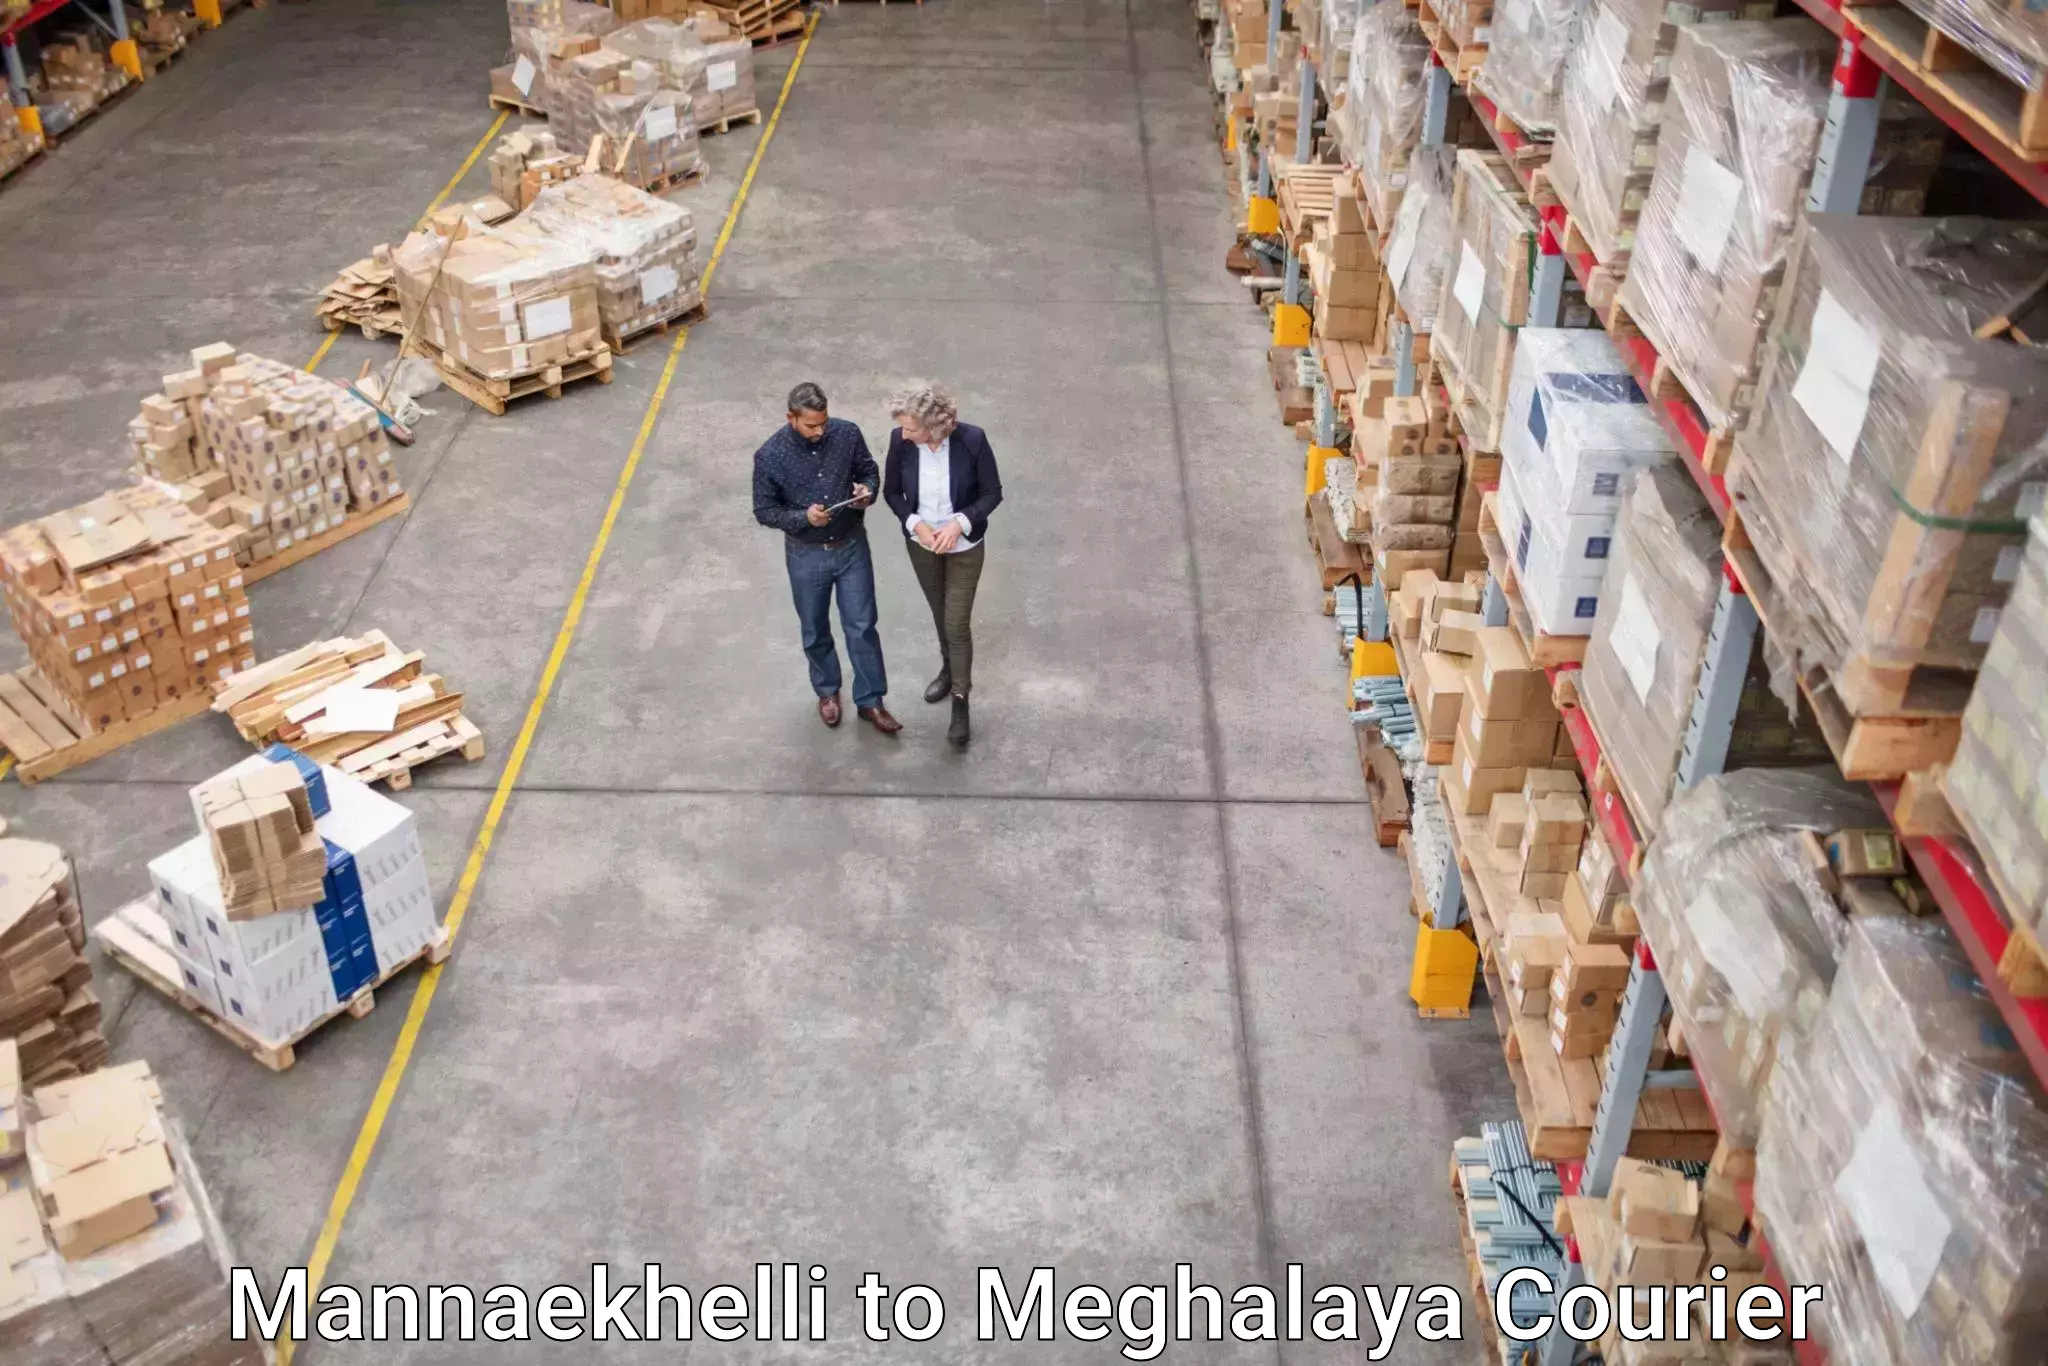 Courier app Mannaekhelli to Meghalaya